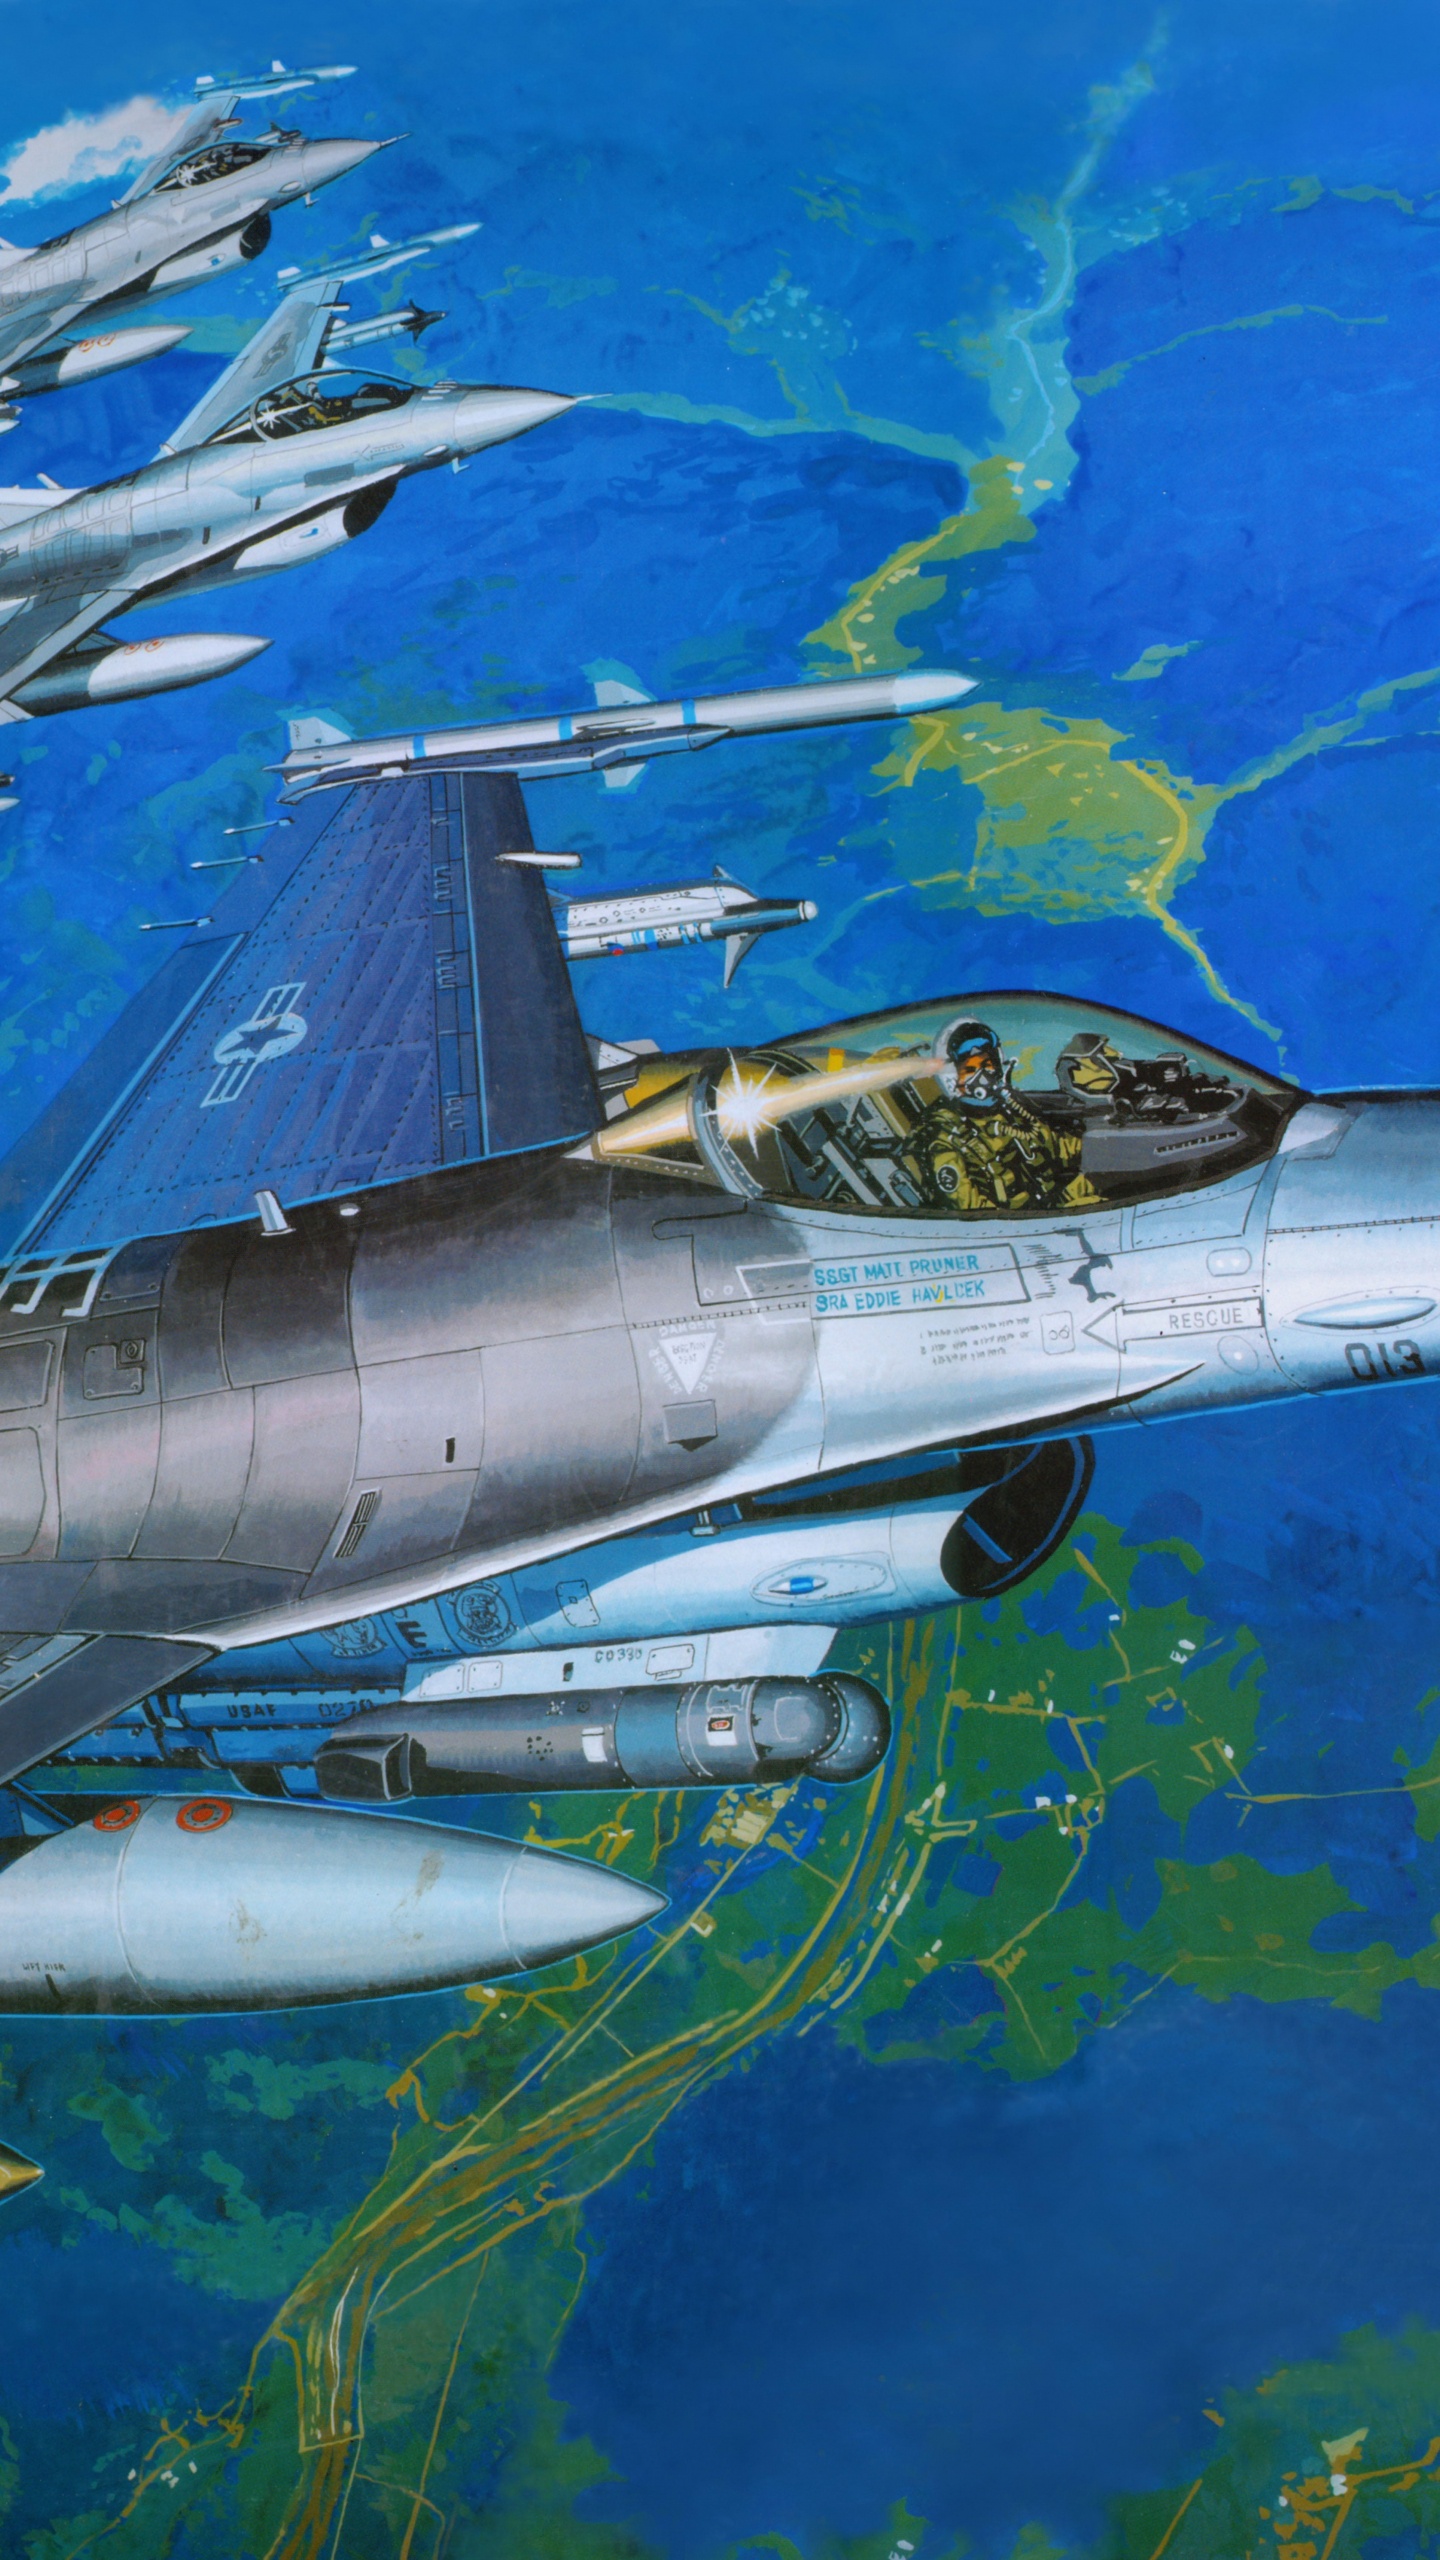 塑料模型, 航空, 空军, 军用飞机, 喷气式飞机 壁纸 1440x2560 允许